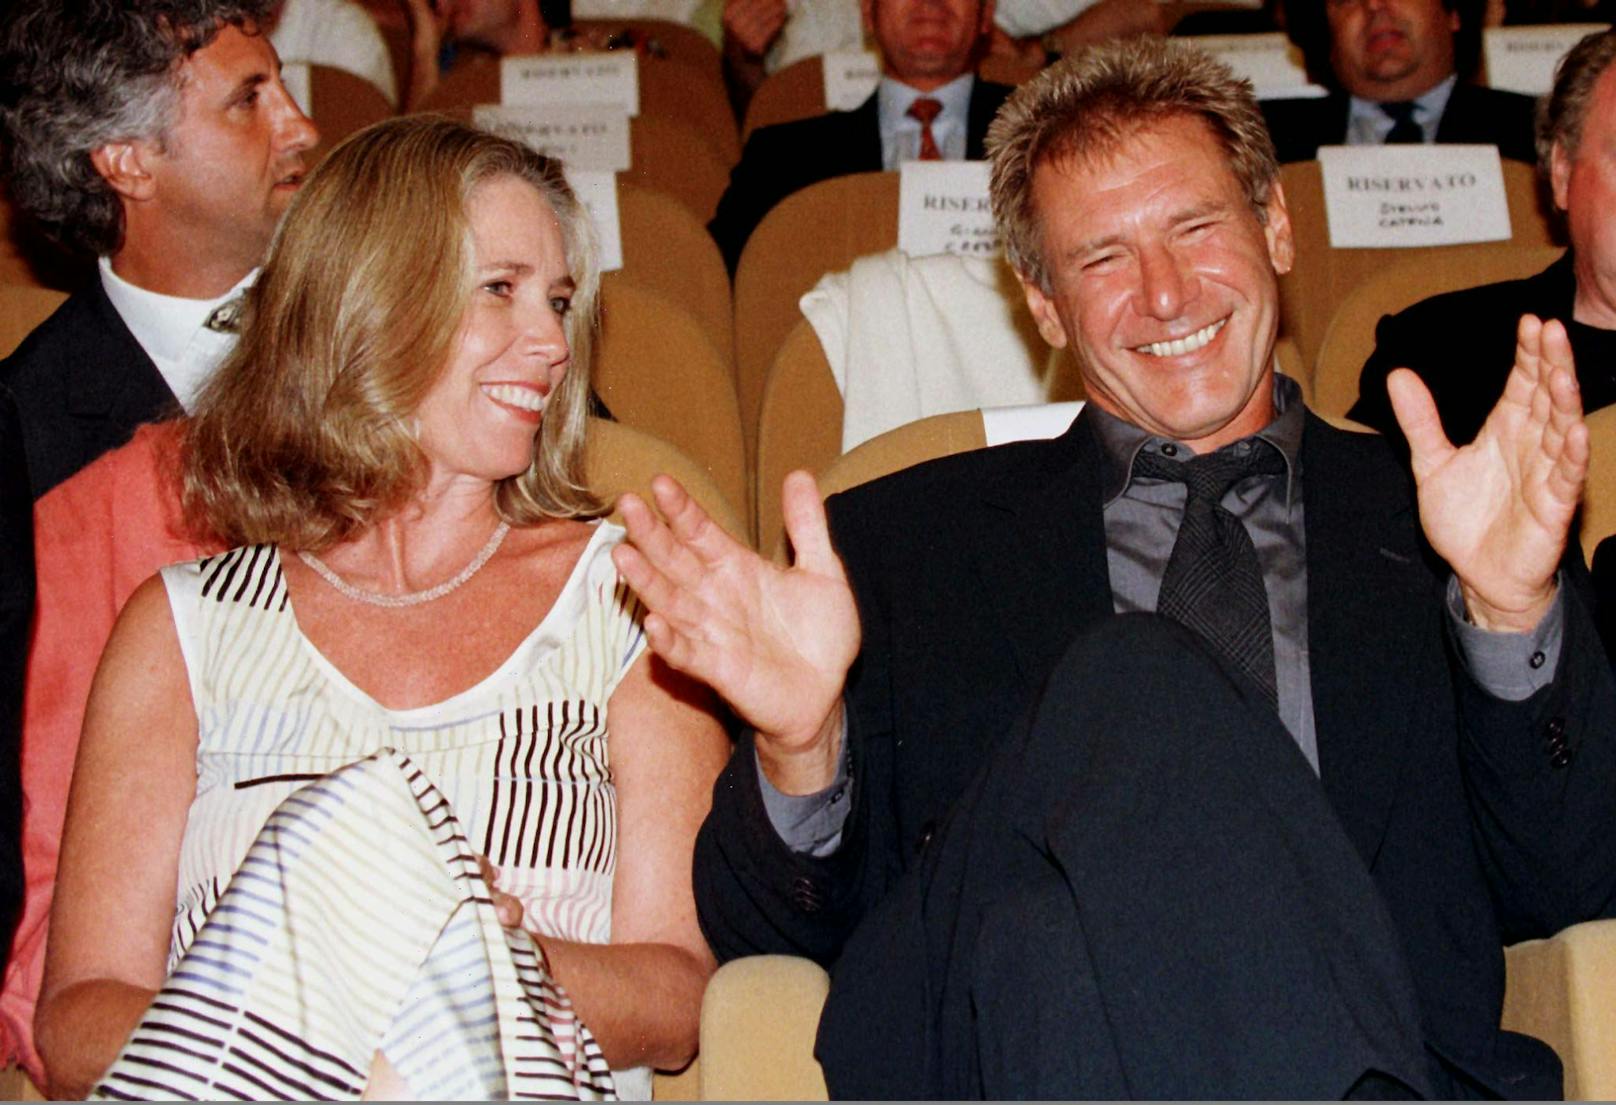 Nach 18 Jahren Ehe ließ sich die Drehbuchautorin Melissa Mathison 2004 von Schauspieler <strong>Harrison Ford</strong> scheiden.&nbsp;Als Grund gab sie "unüberwindbare Differenzen" an. Ford ließ sich die Trennung&nbsp;85 Millionen&nbsp;US-Dollar kosten.